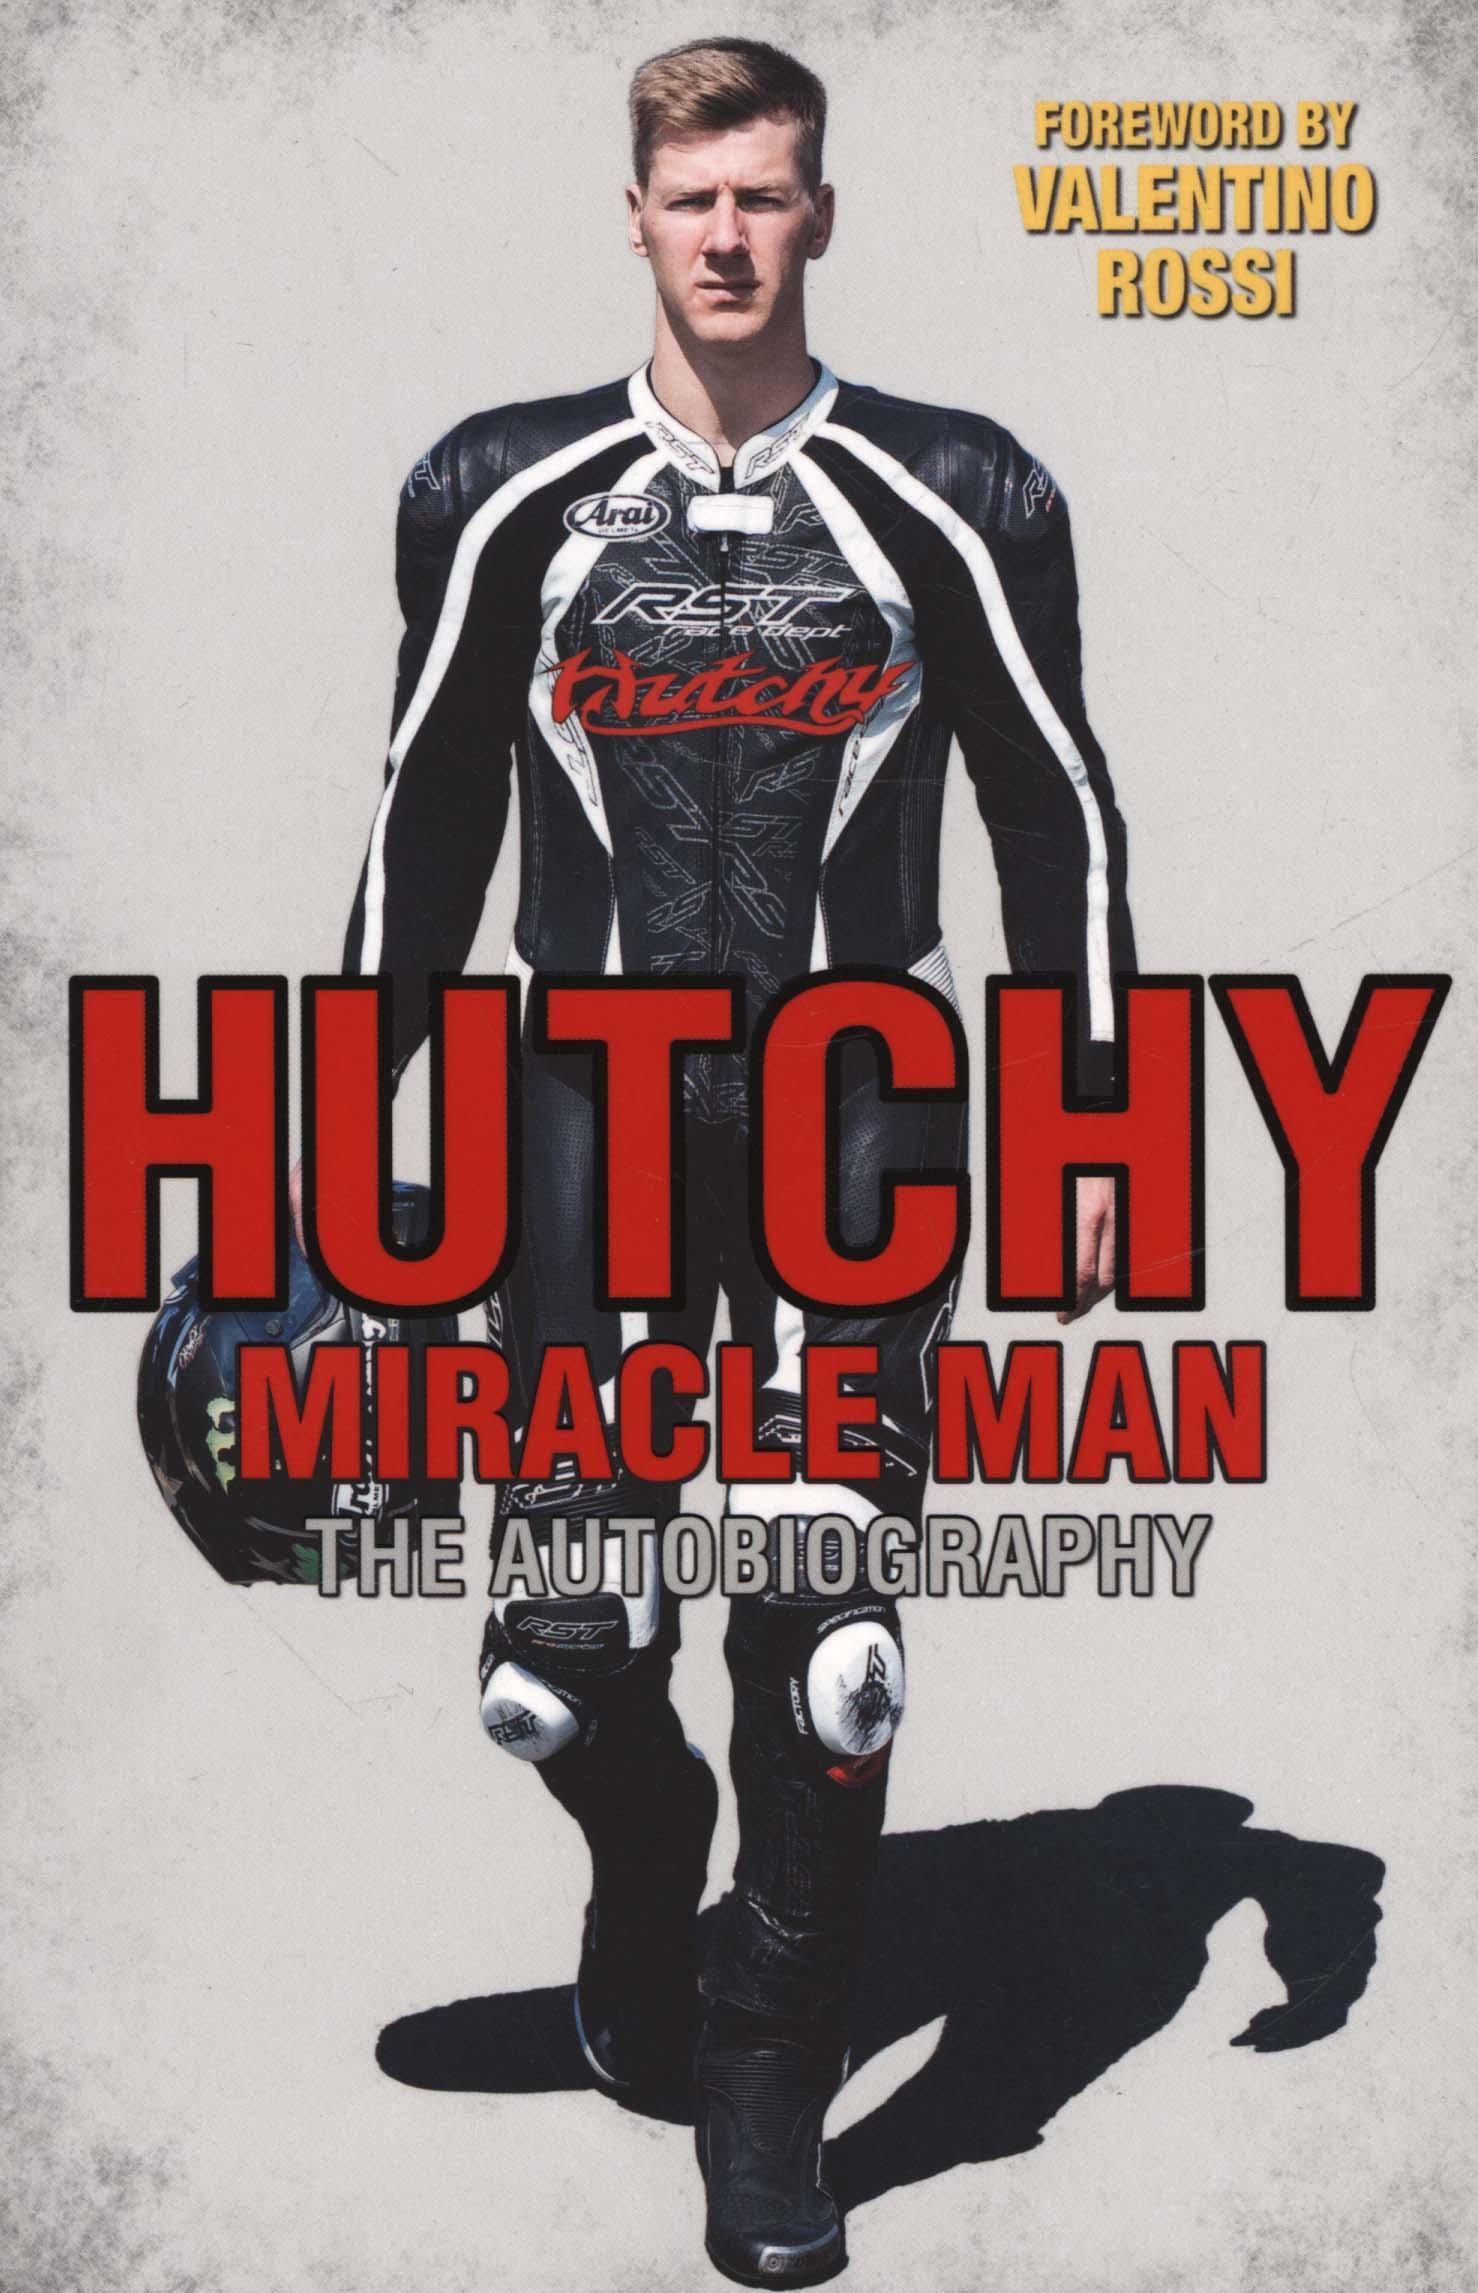 Hutchy